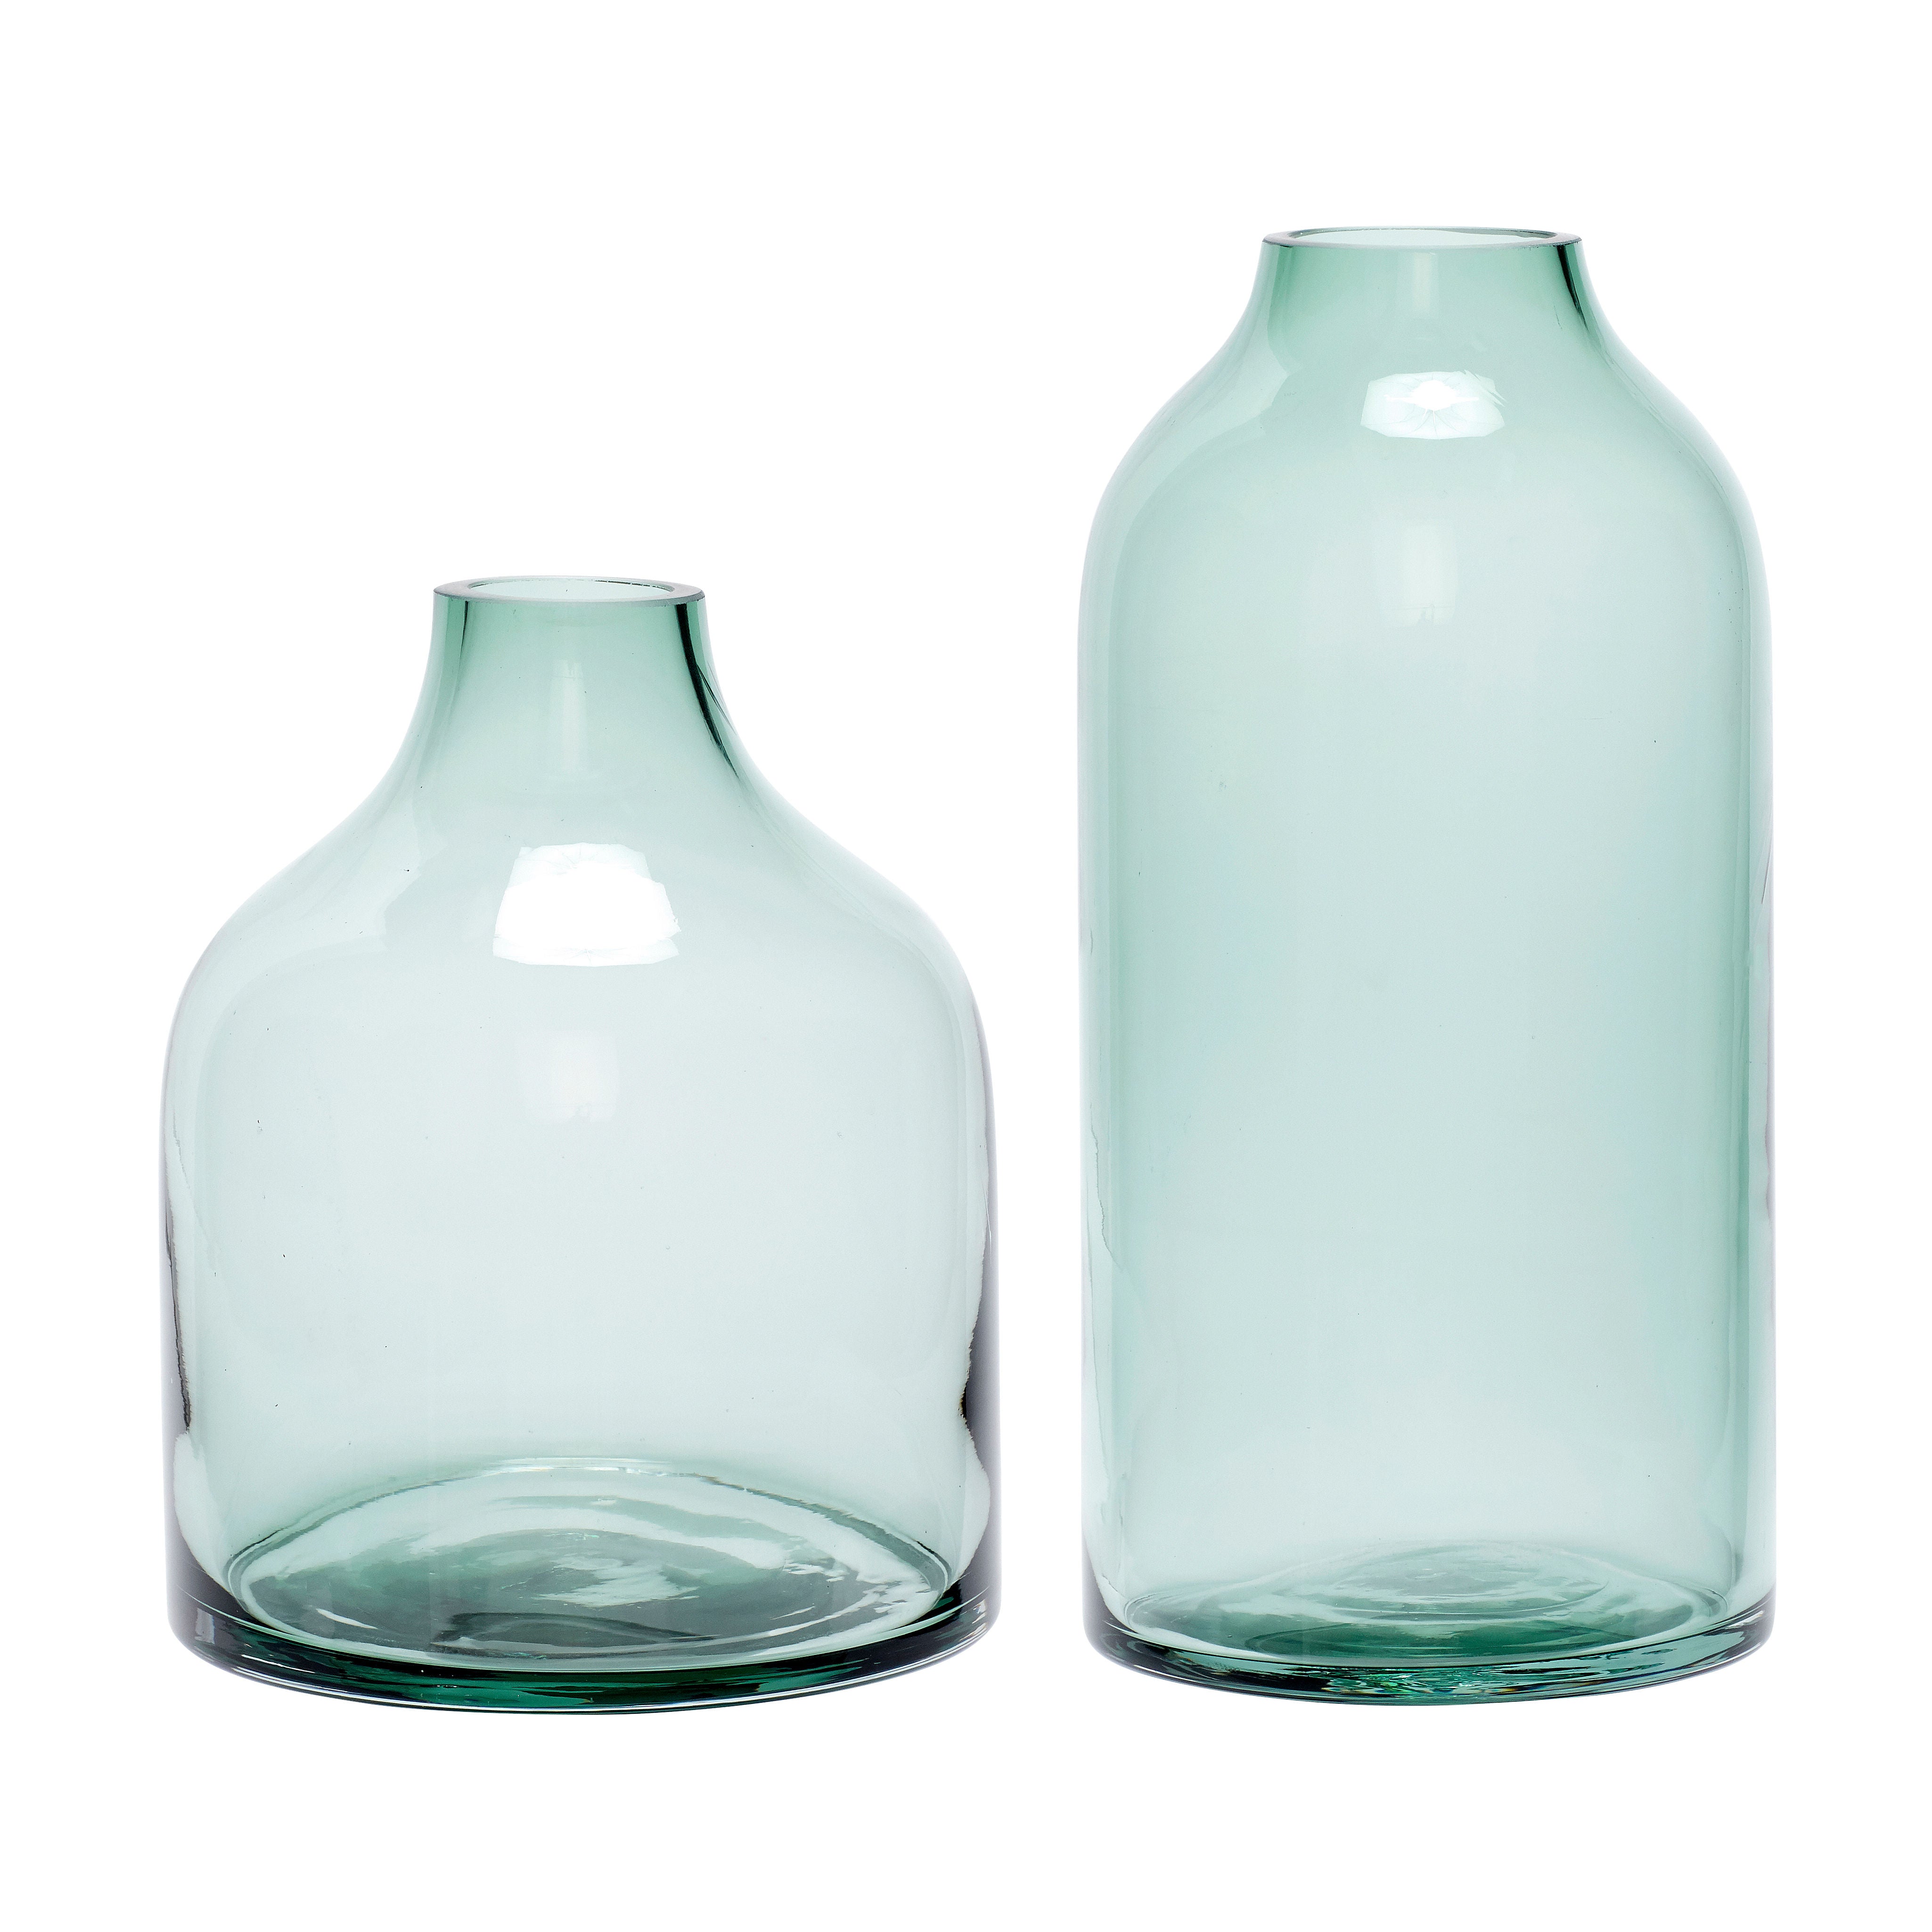 Modest Green Vases (set of 2)